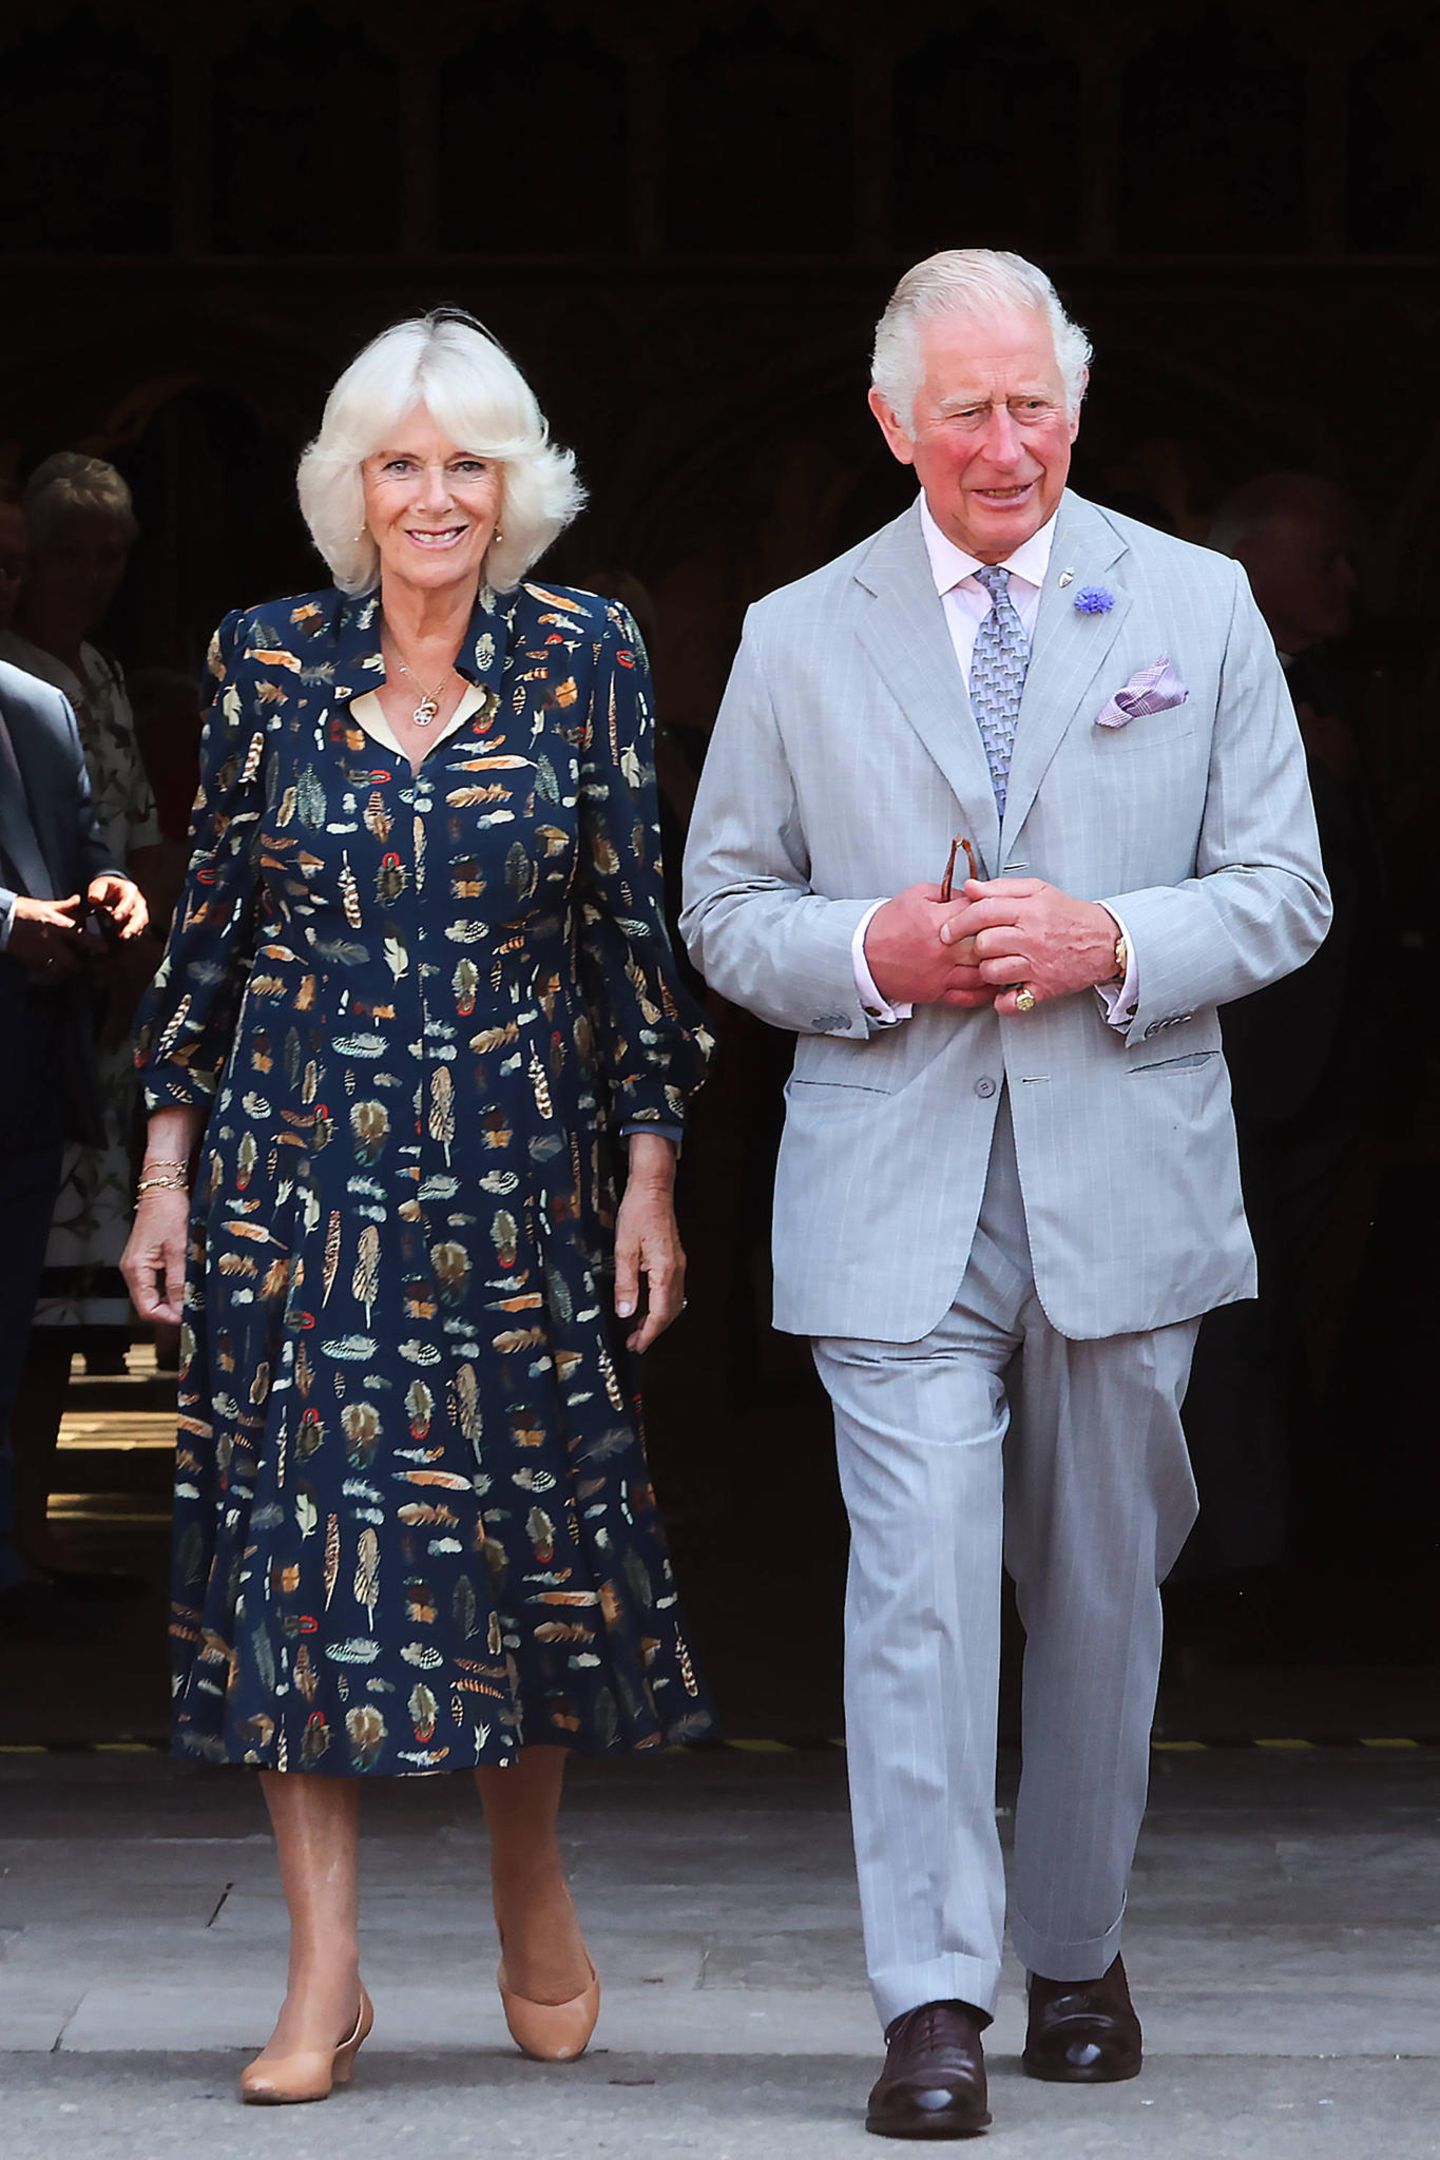 Während ihrer dreitägigen Reise in Devon und Cornwall zeigt sich Herzogin Camilla von ihrer stylischen Seite. In einem dunkelblauen Blusenkleid mit Feder-Muster strahlt sie an der Seite von Prinz Charles. Doch nicht nur das Kleid sticht uns ins Auge – auch ihre cremefarbenen Schuhe. Sie trägt ein Exemplar der Marke Sole Bliss für 175 Euro. Fans wollen beobachtet haben, dass die Frau von Prinz Charles diese Schuhen bereits mehr als 80 Mal zu öffentlichen Auftritten wählte.